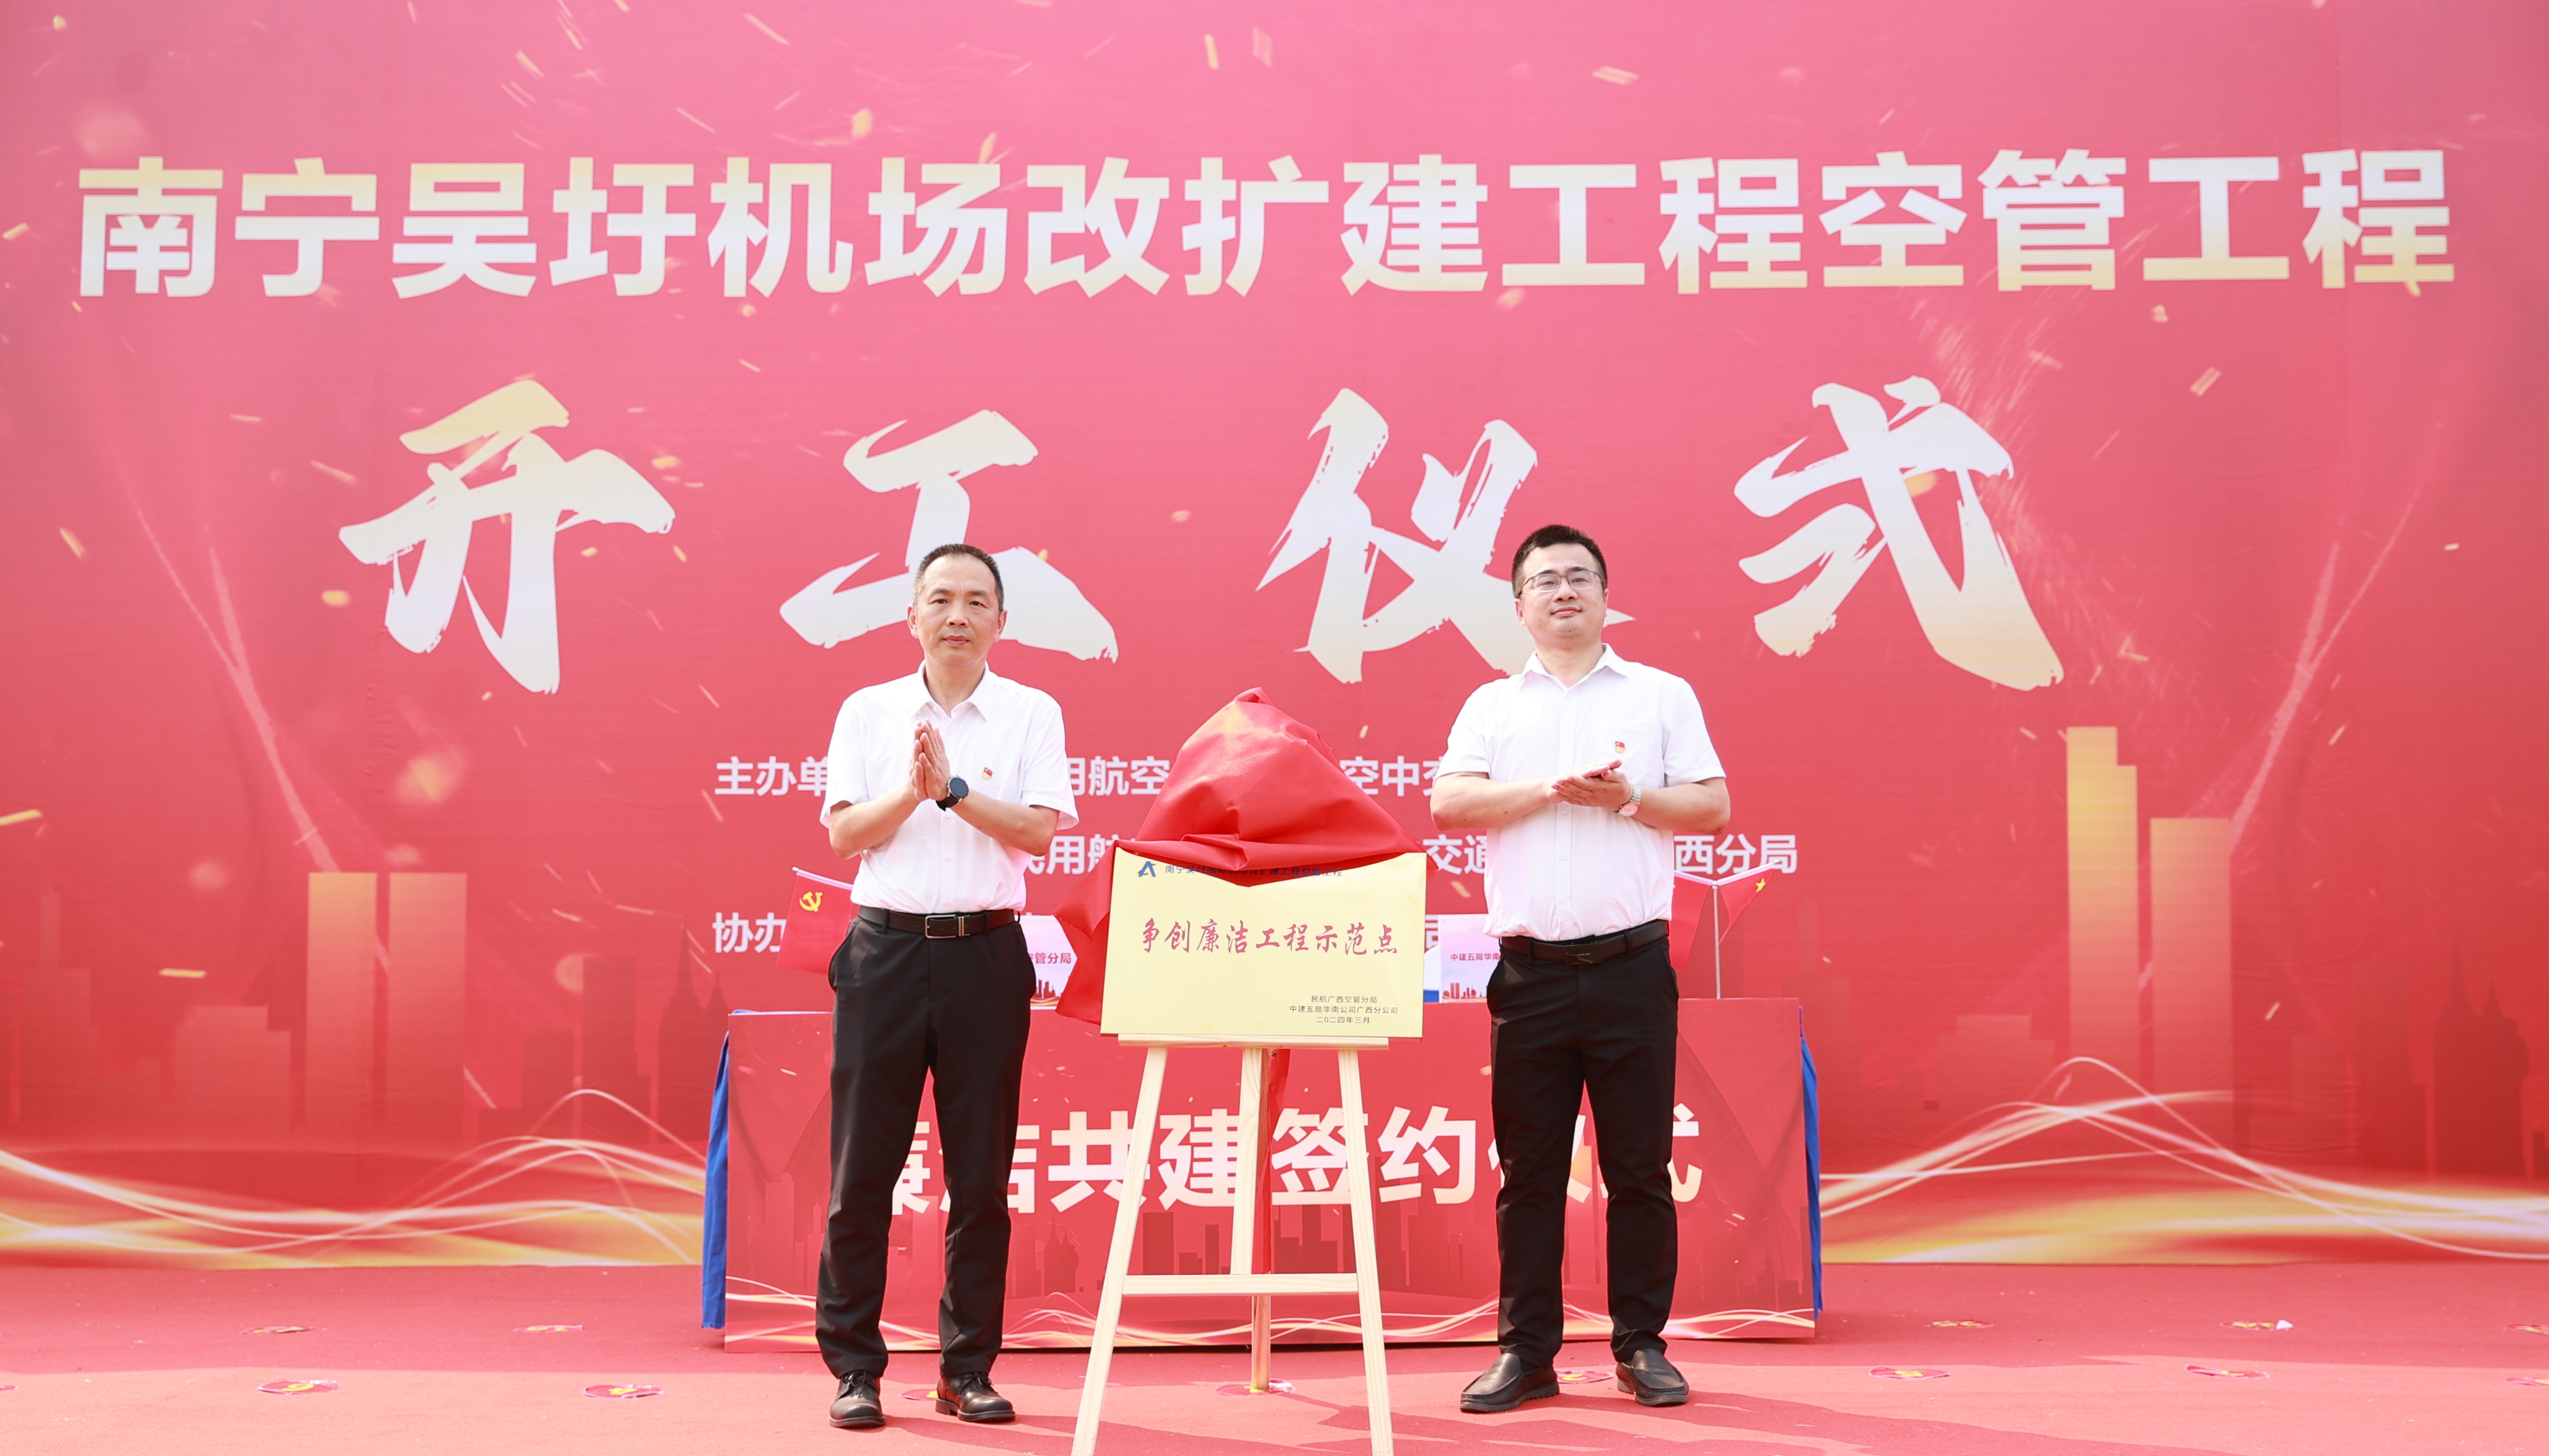 广西空管分局与中建五局华南公司广西分公司举办“廉洁工程示范点”揭牌仪式